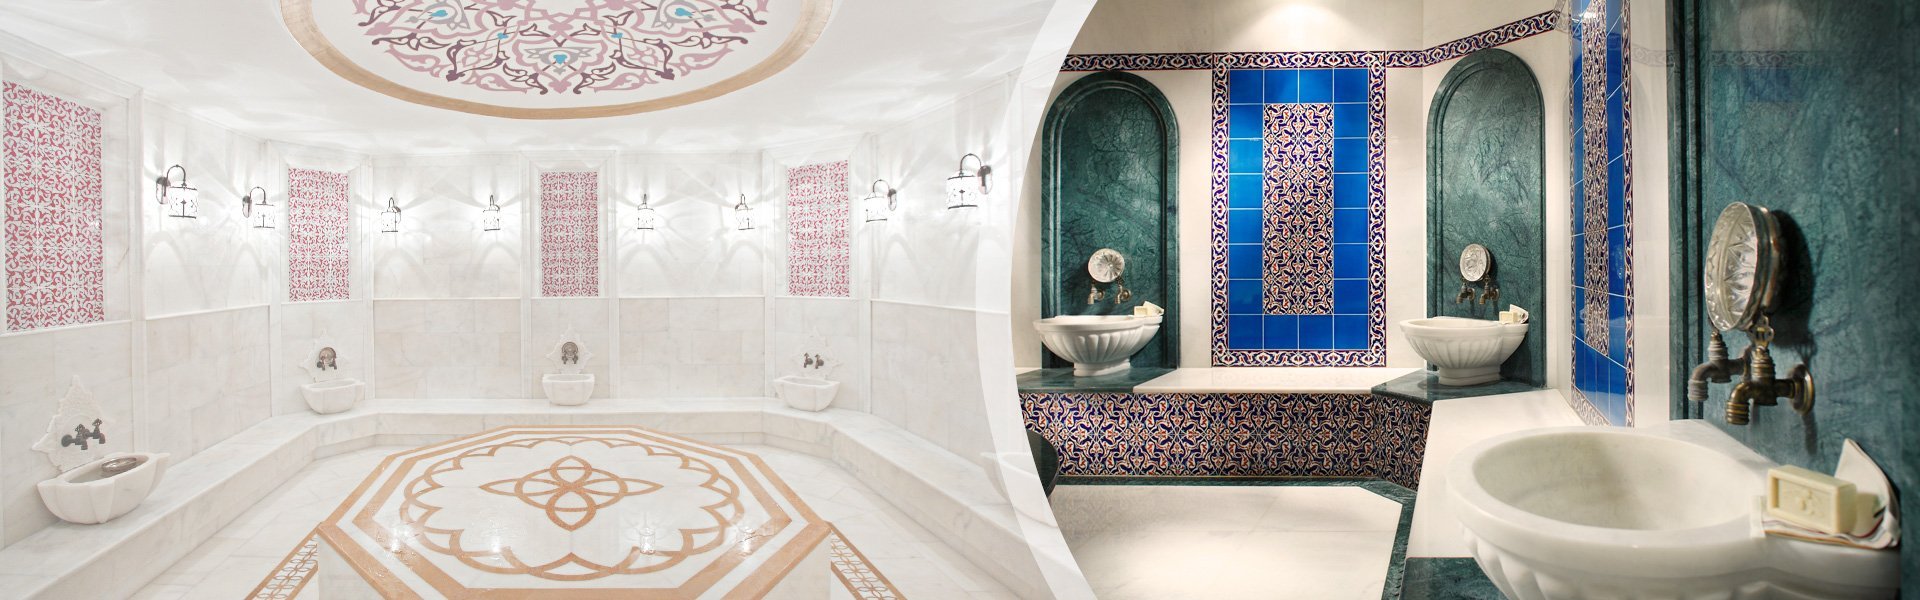 Турецкая баня хамам в домашних условиях